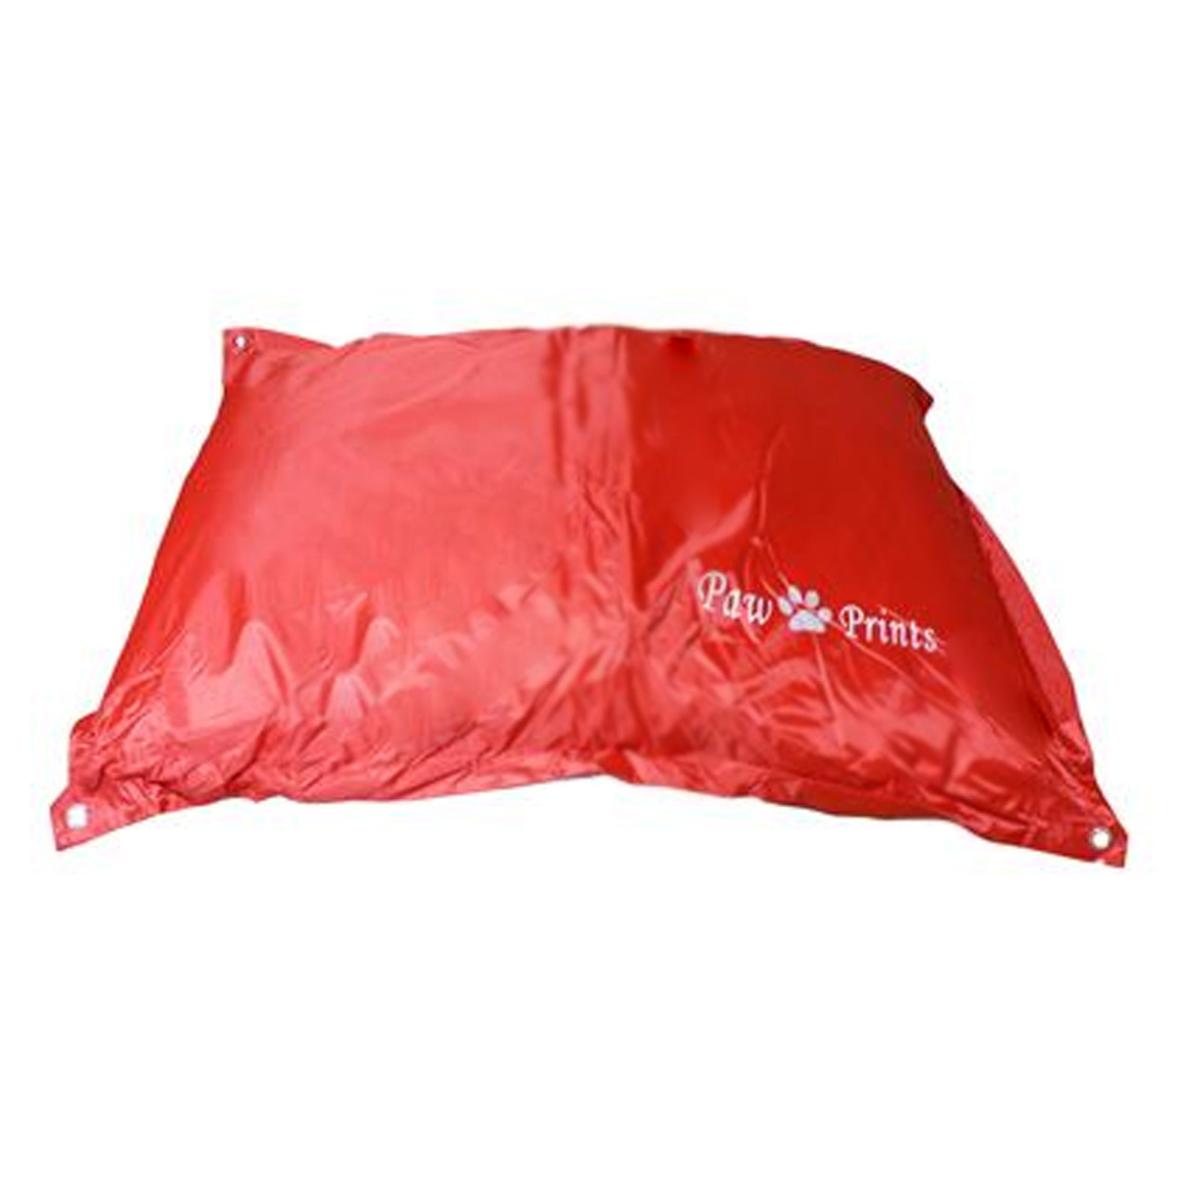 Cheeko Kool Lounger Waterproof Duvet Dog Bed - Red